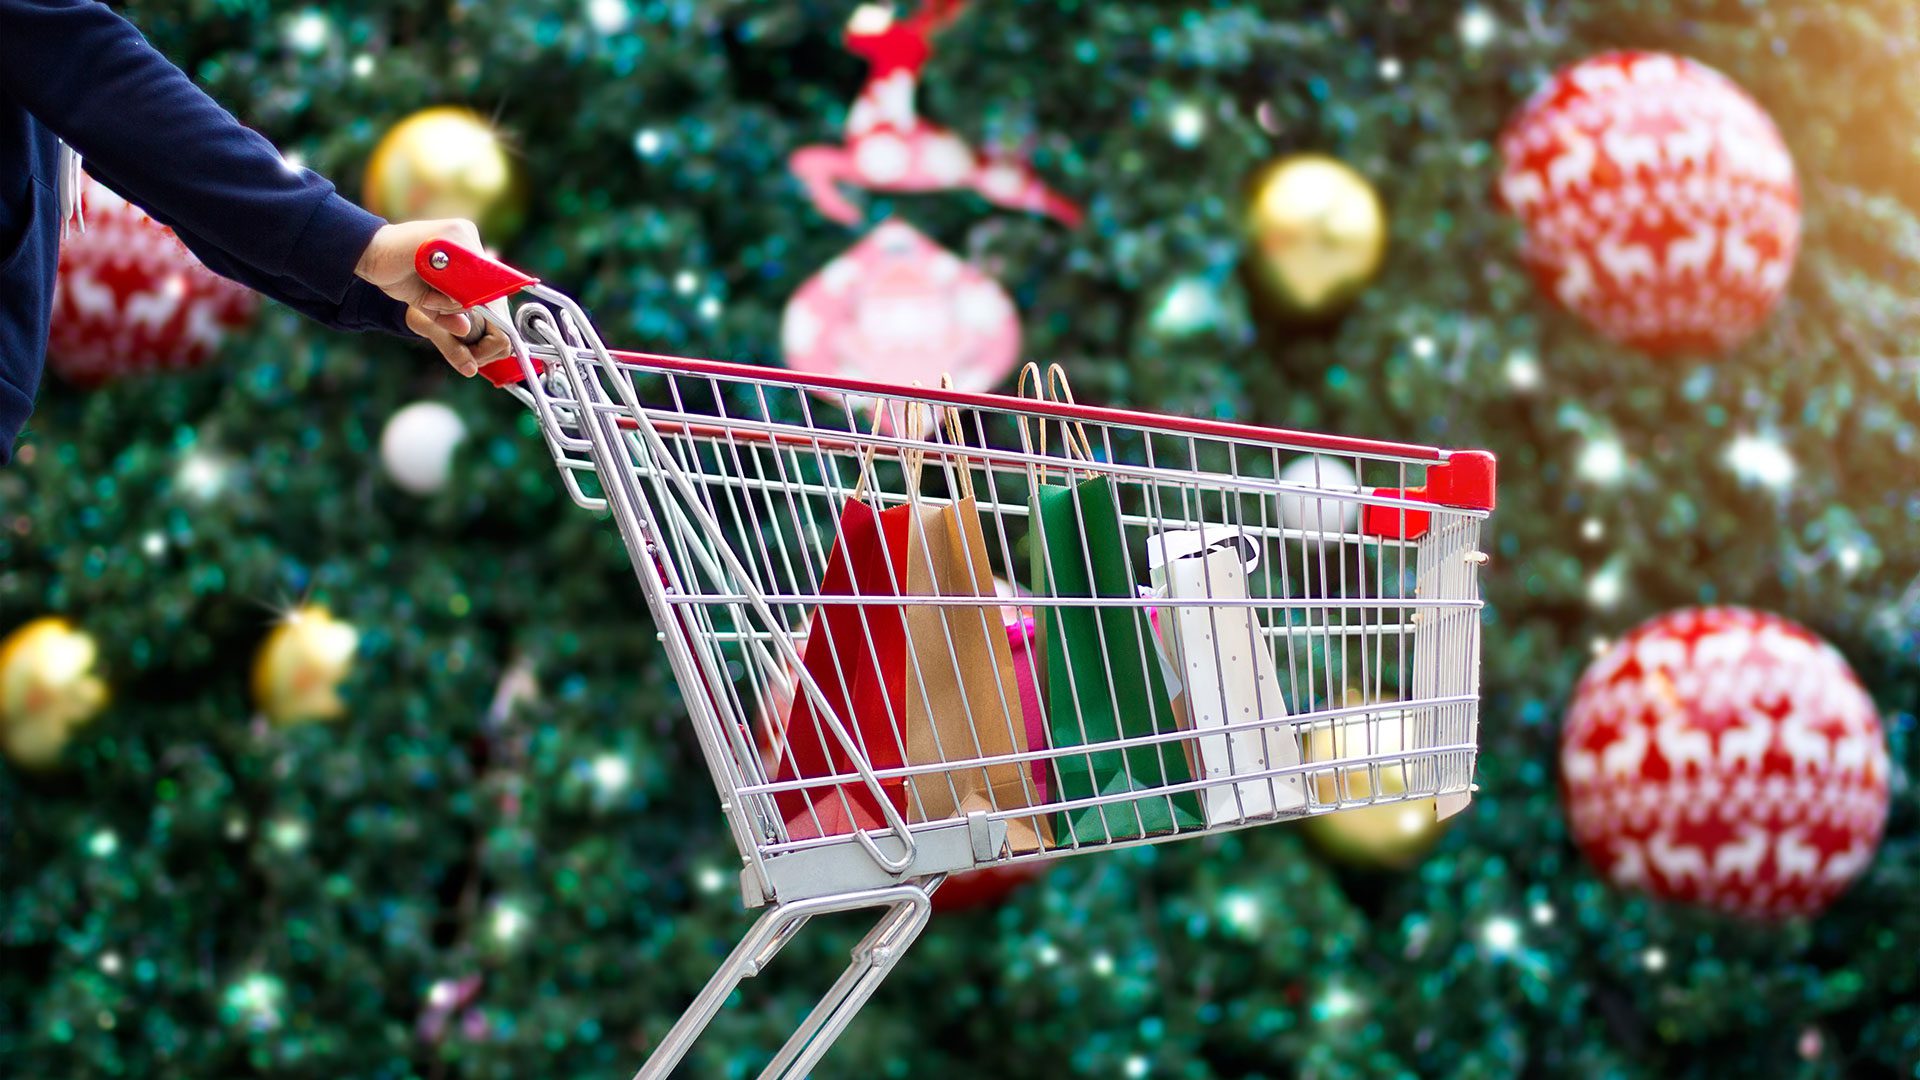 Εύβοια: Το ωράριο καταστημάτων και σούπερ μάρκετ την παραμονή των Χριστουγέννων